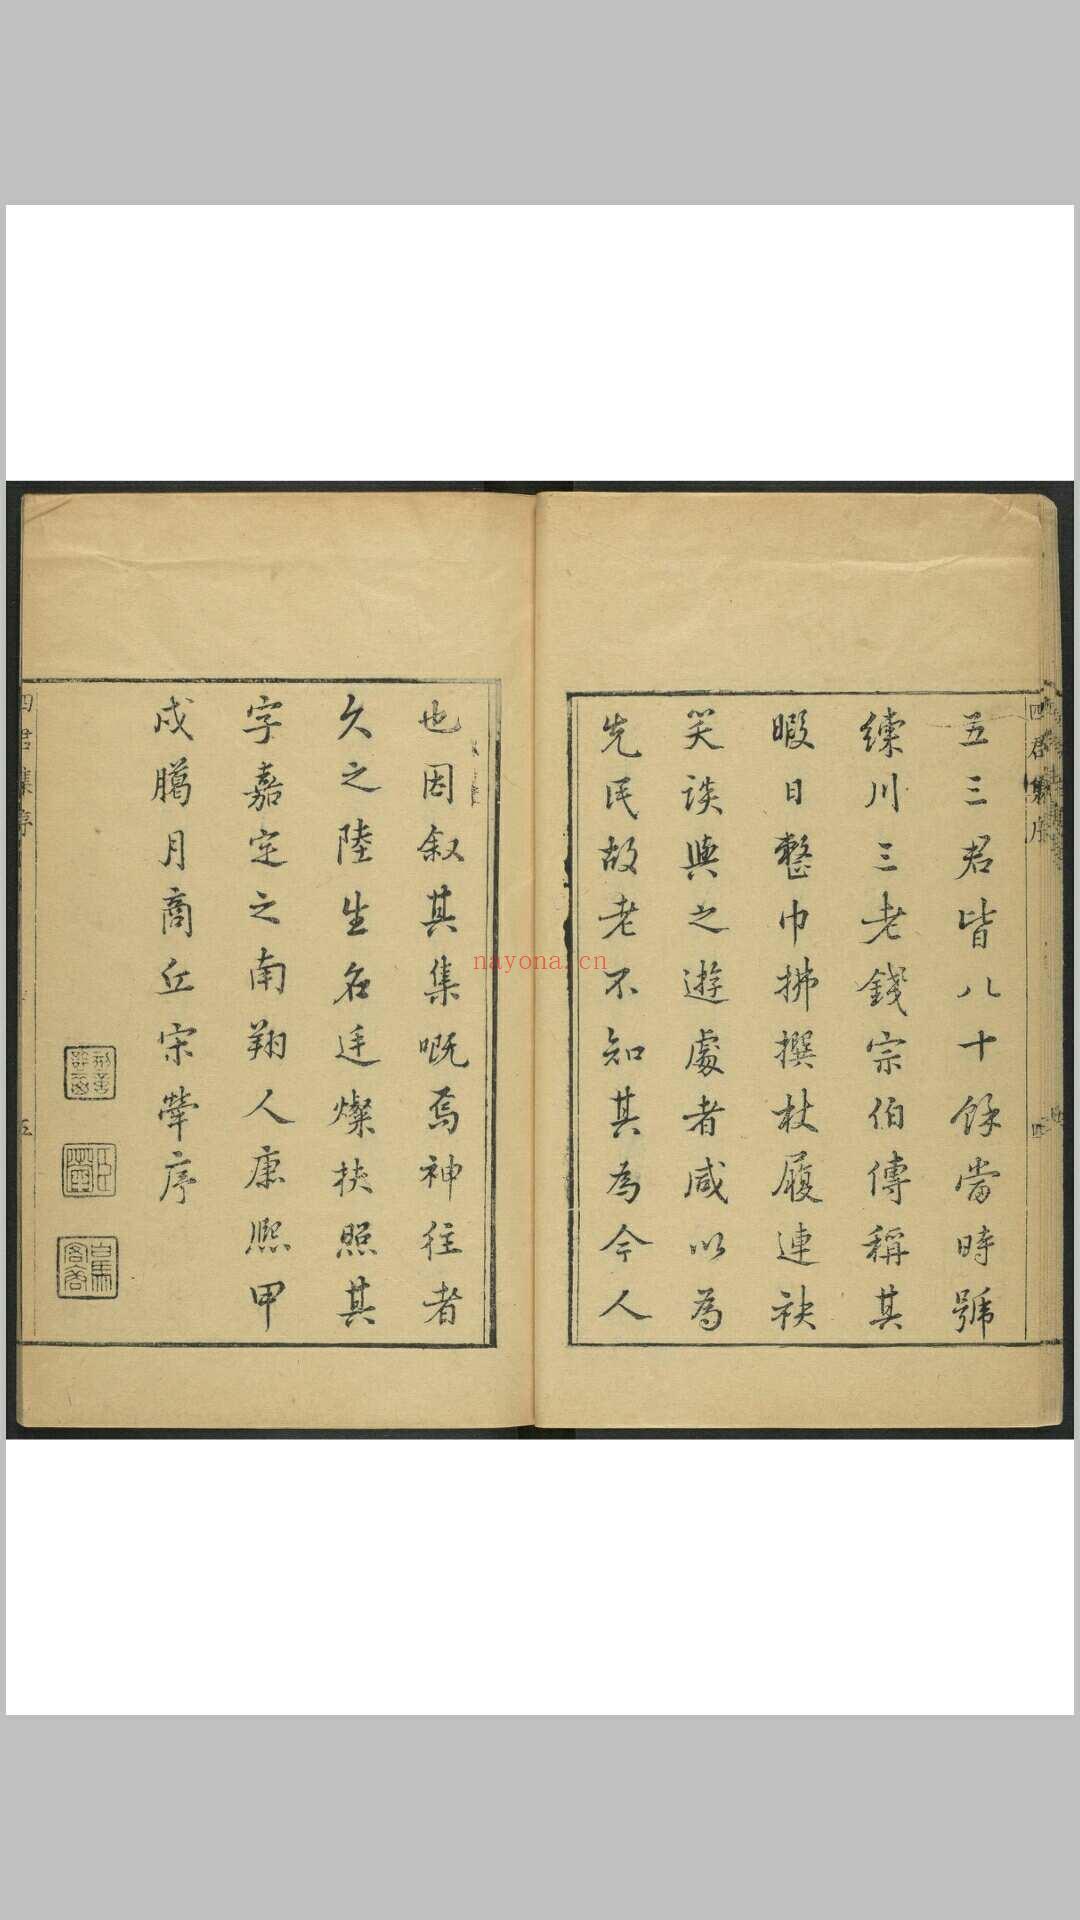 嘉定四先生集 谢三宾辑 陆廷灿重修 嘉定陆氏, [1694]